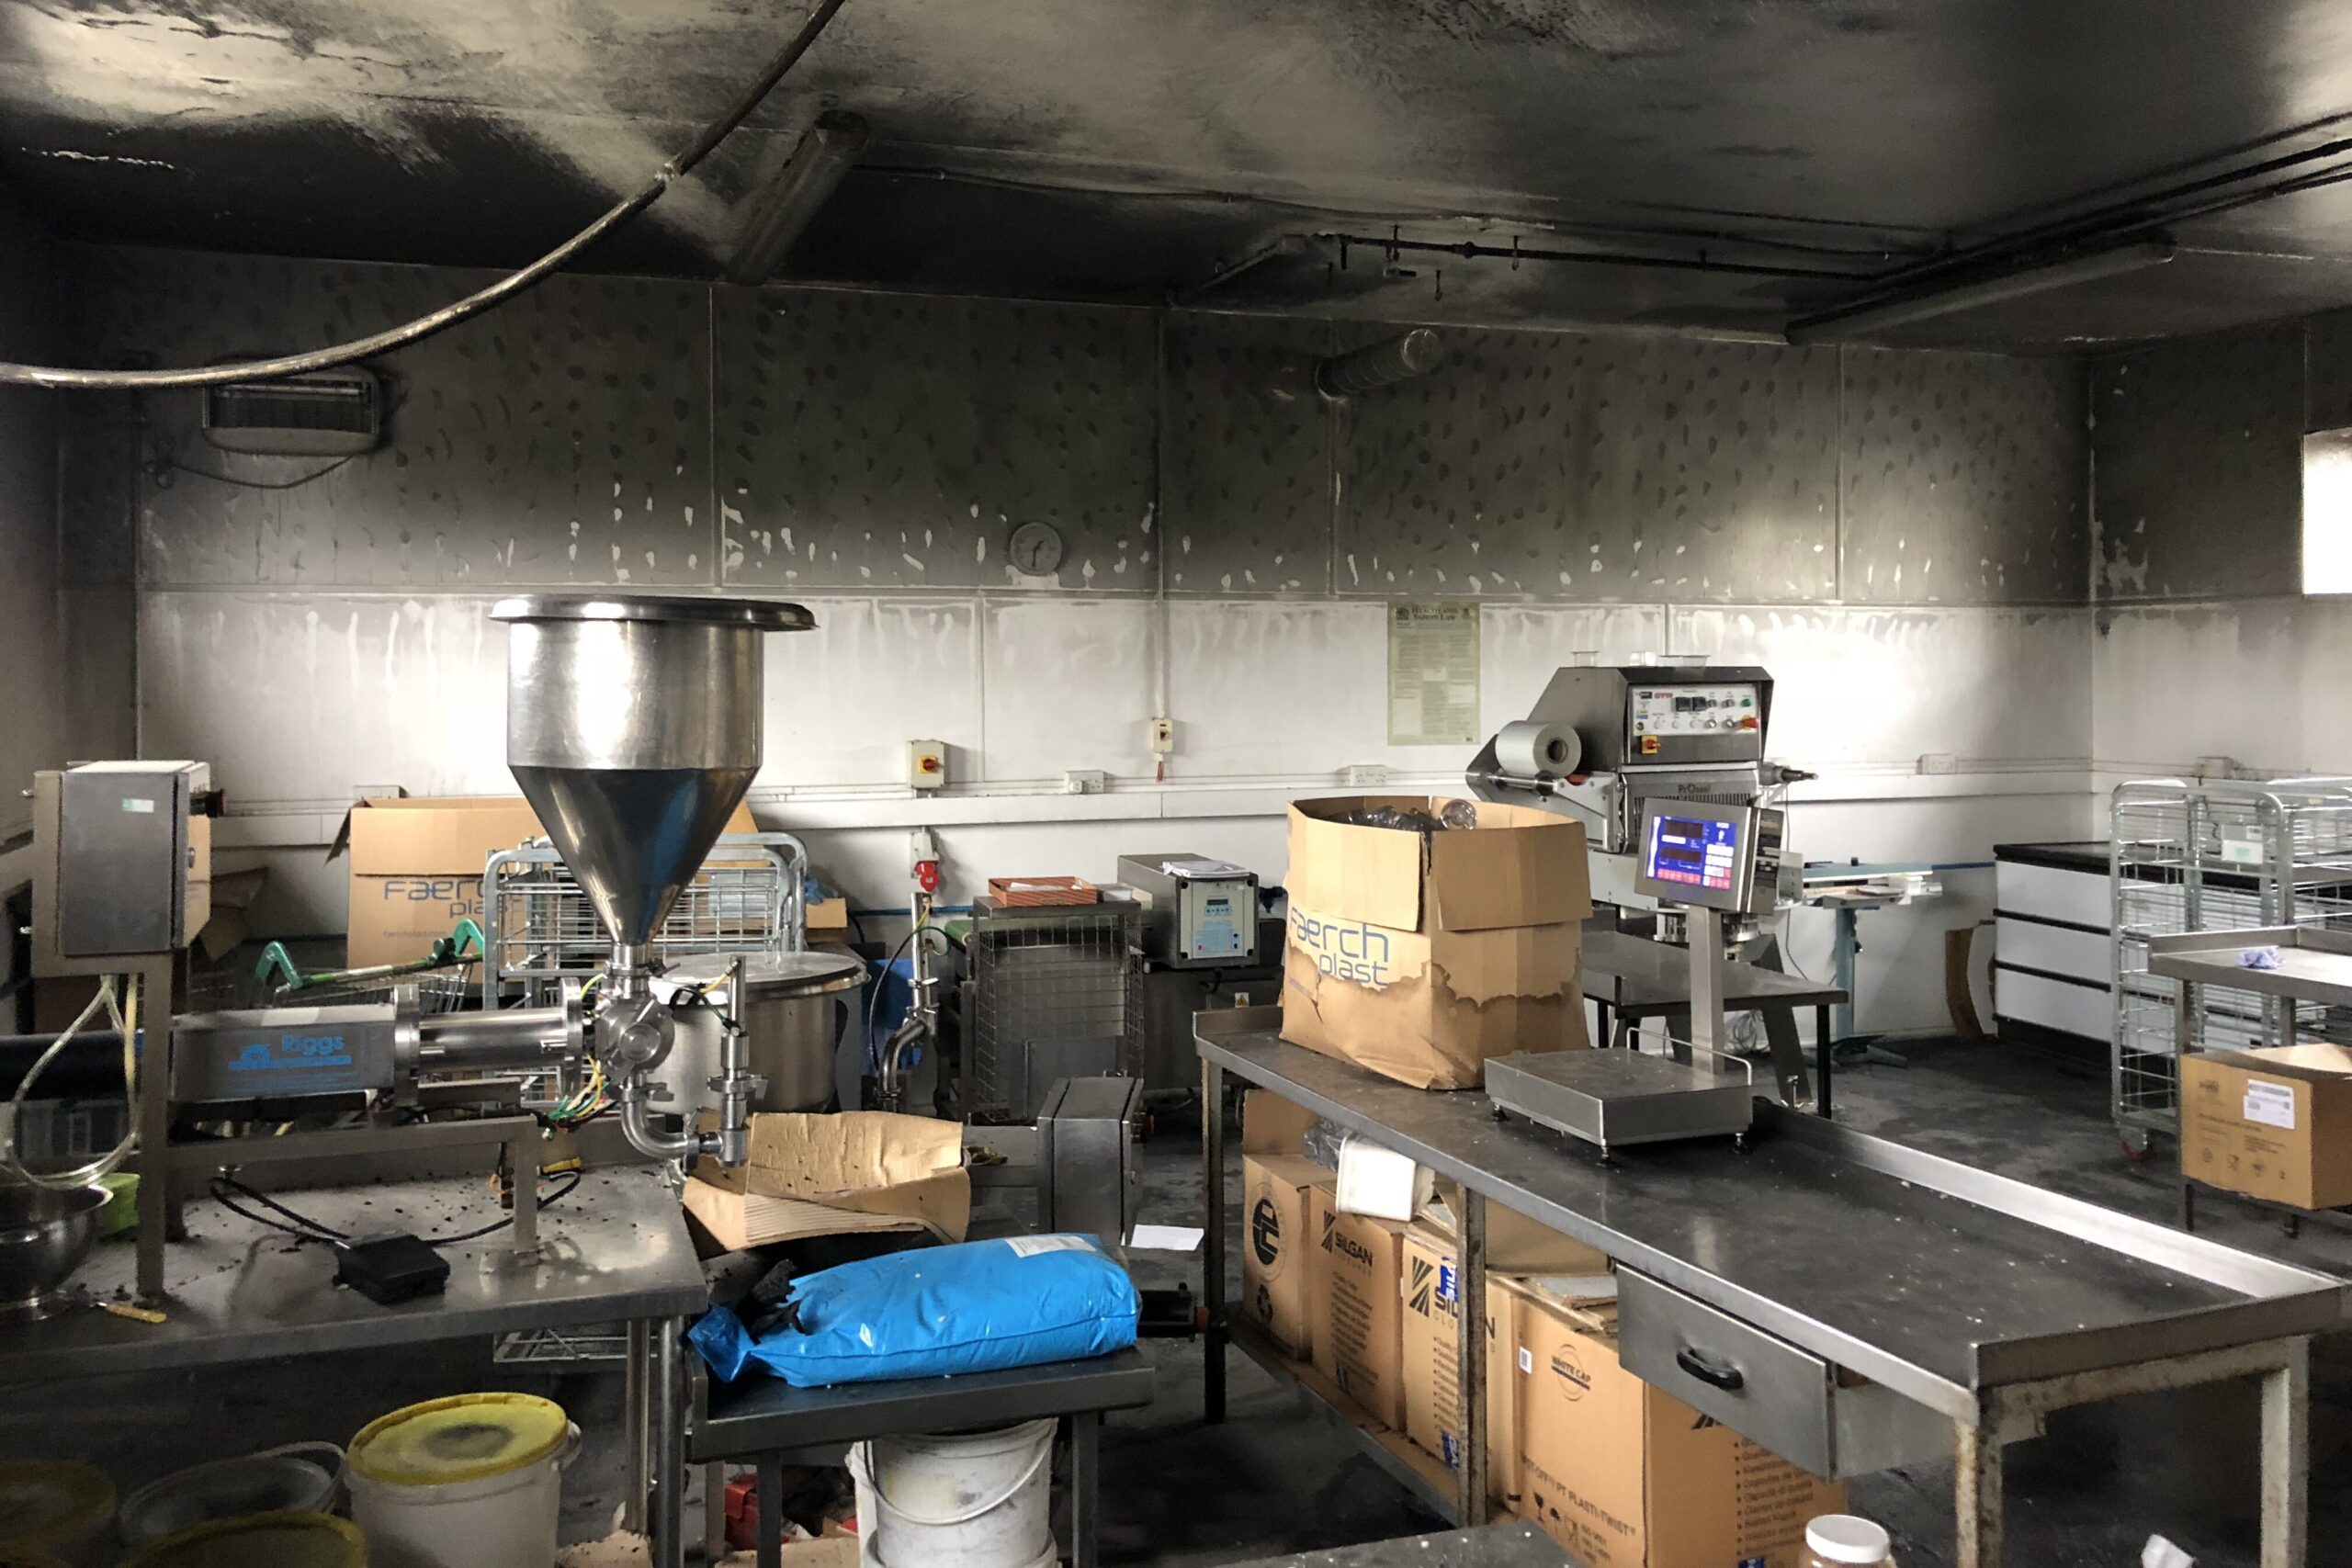 smoke damaged kitchen